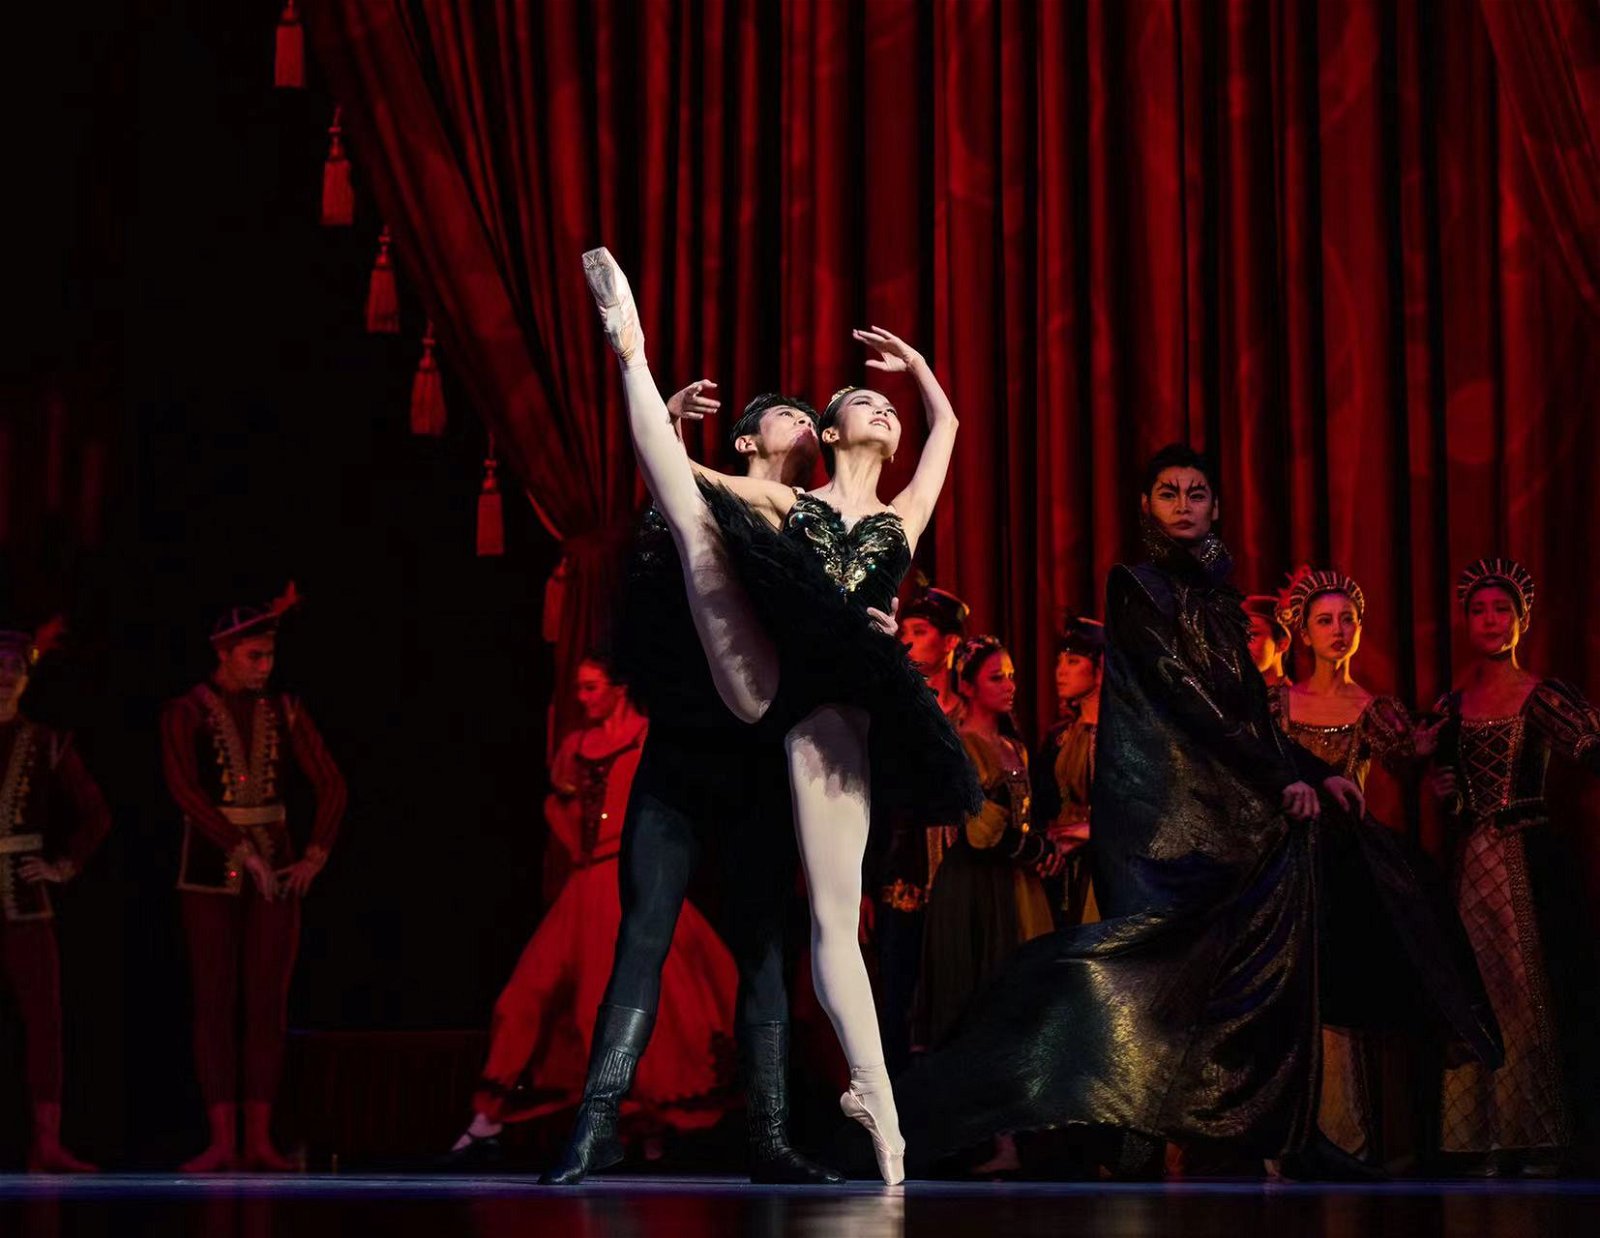 舞者以优美的芭蕾舞姿演绎《天鹅湖》精彩片段。